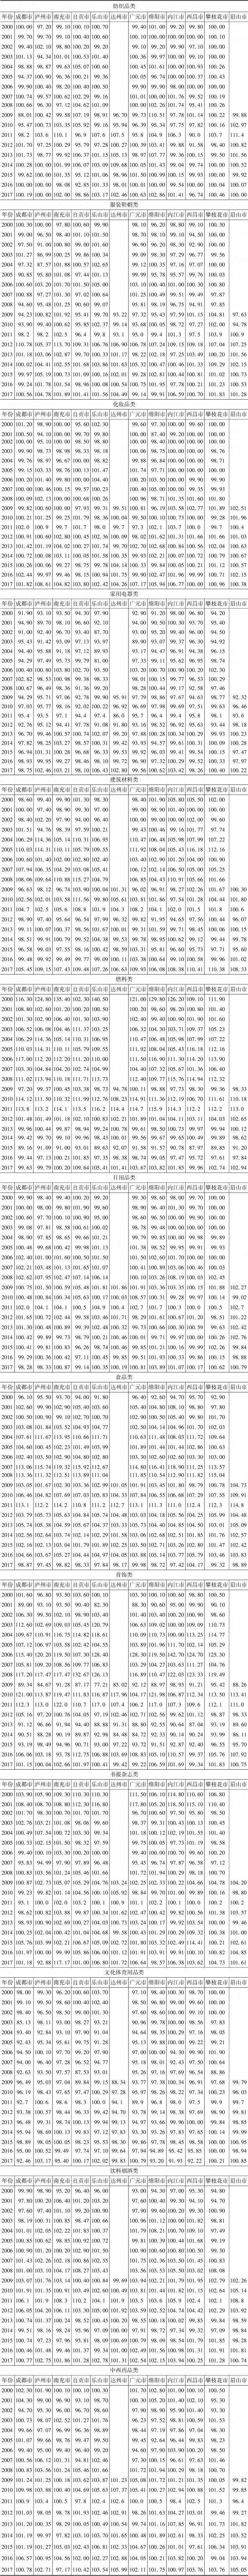 附录1 2000～2017年四川省主要城市商品零售价格指数